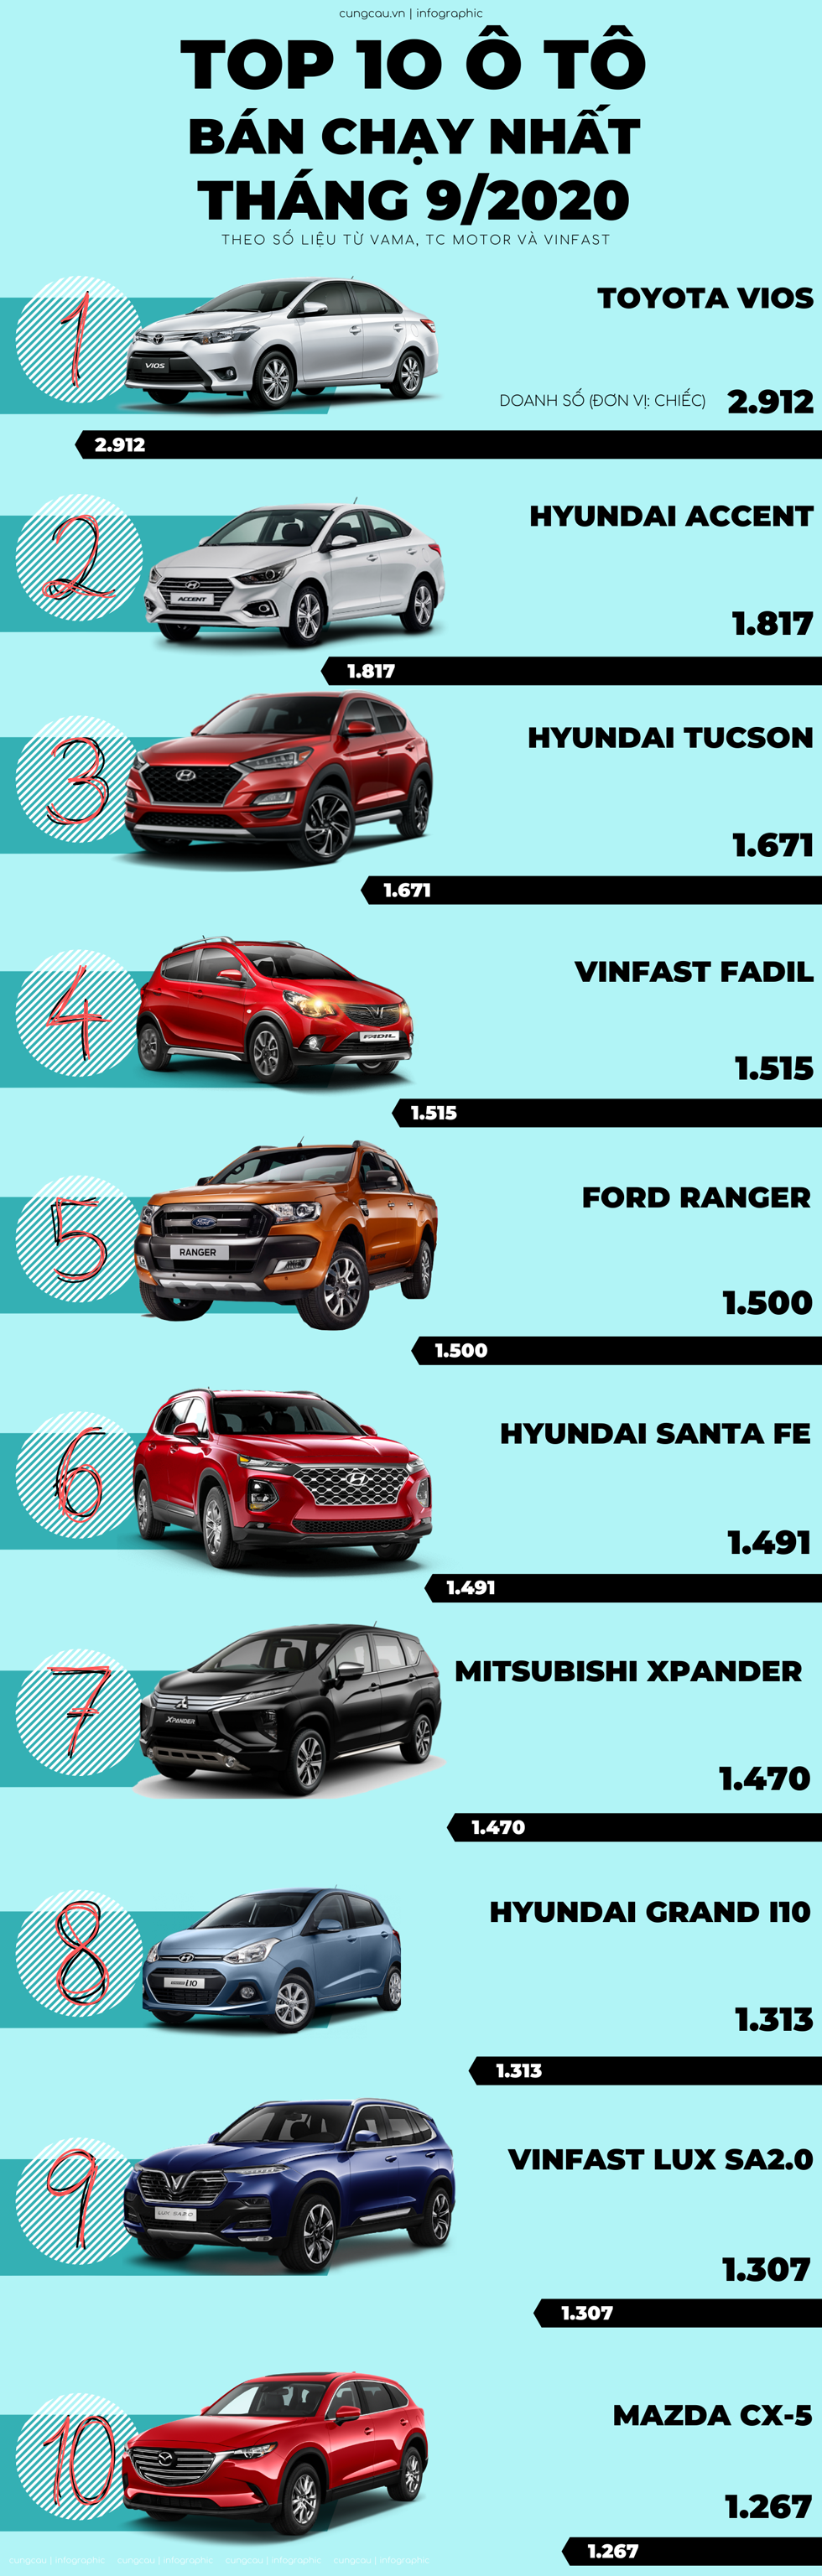 Top 10 ô tô bán có doanh số cao nhất tại thị trường Việt Nam tháng 9/2020.